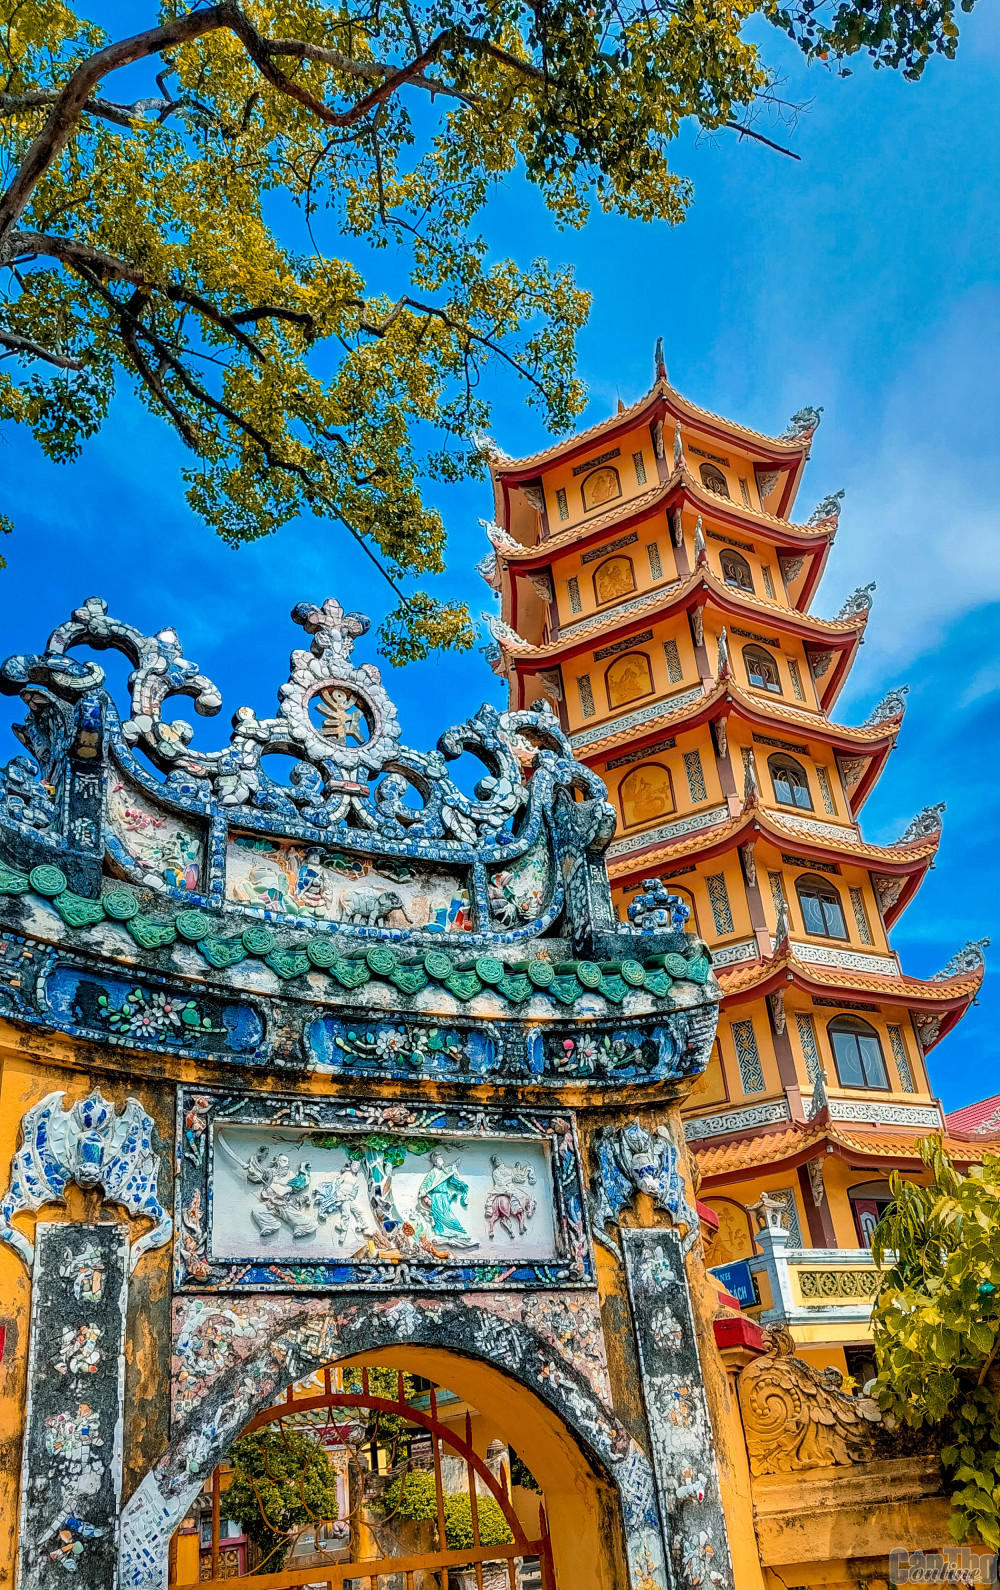 Sau gần 120 năm, cổng chùa vẫn vững chãi, trơ gan cùng tuế nguyệt.